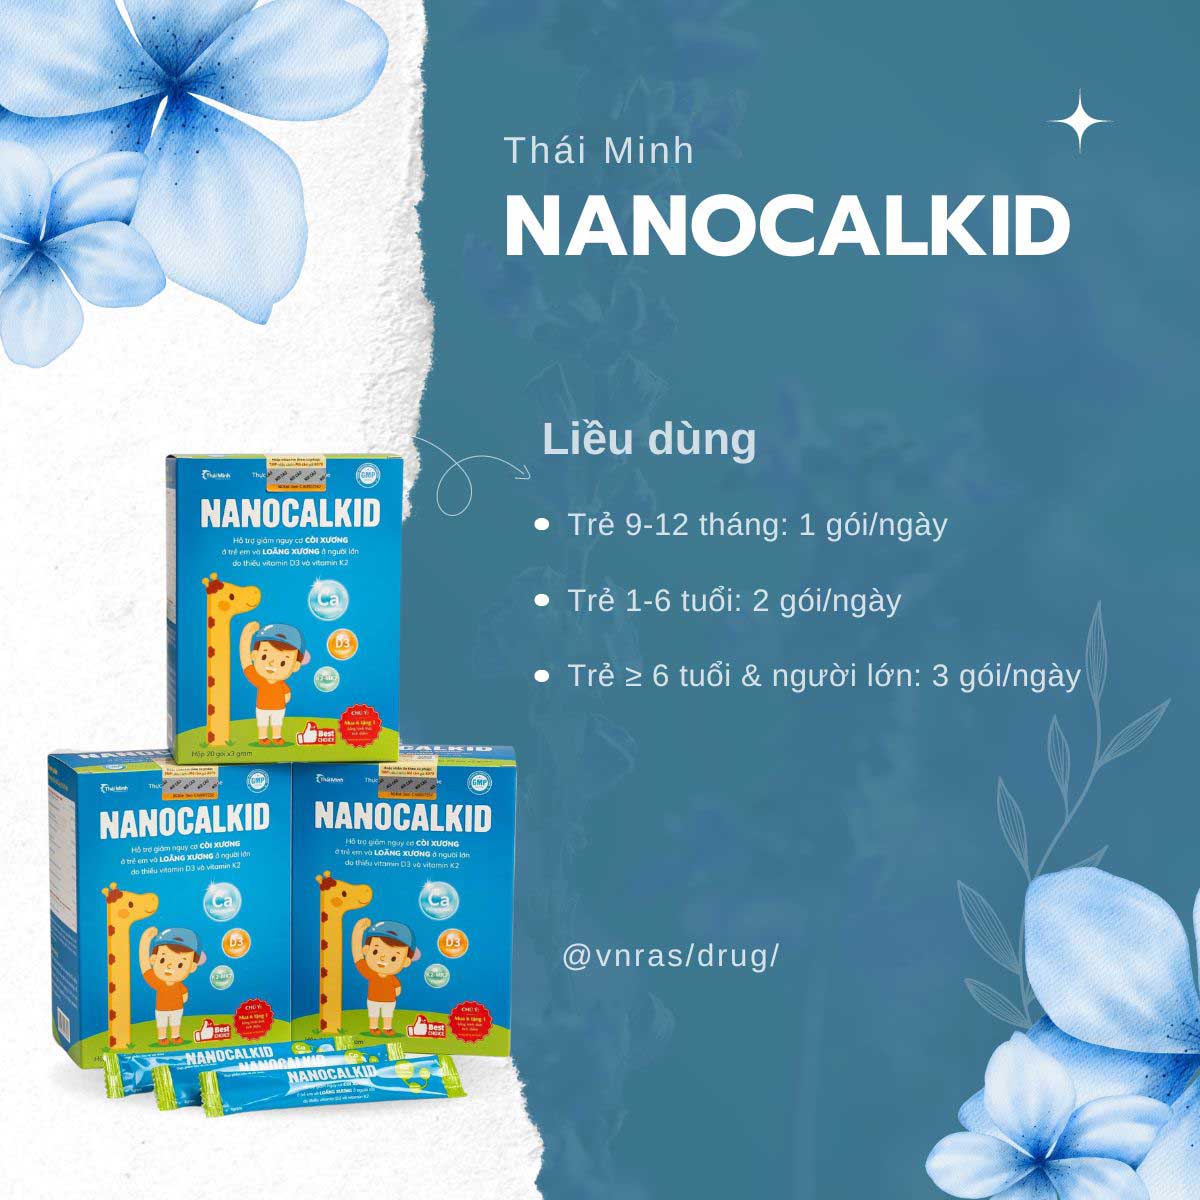 Nanocalkid